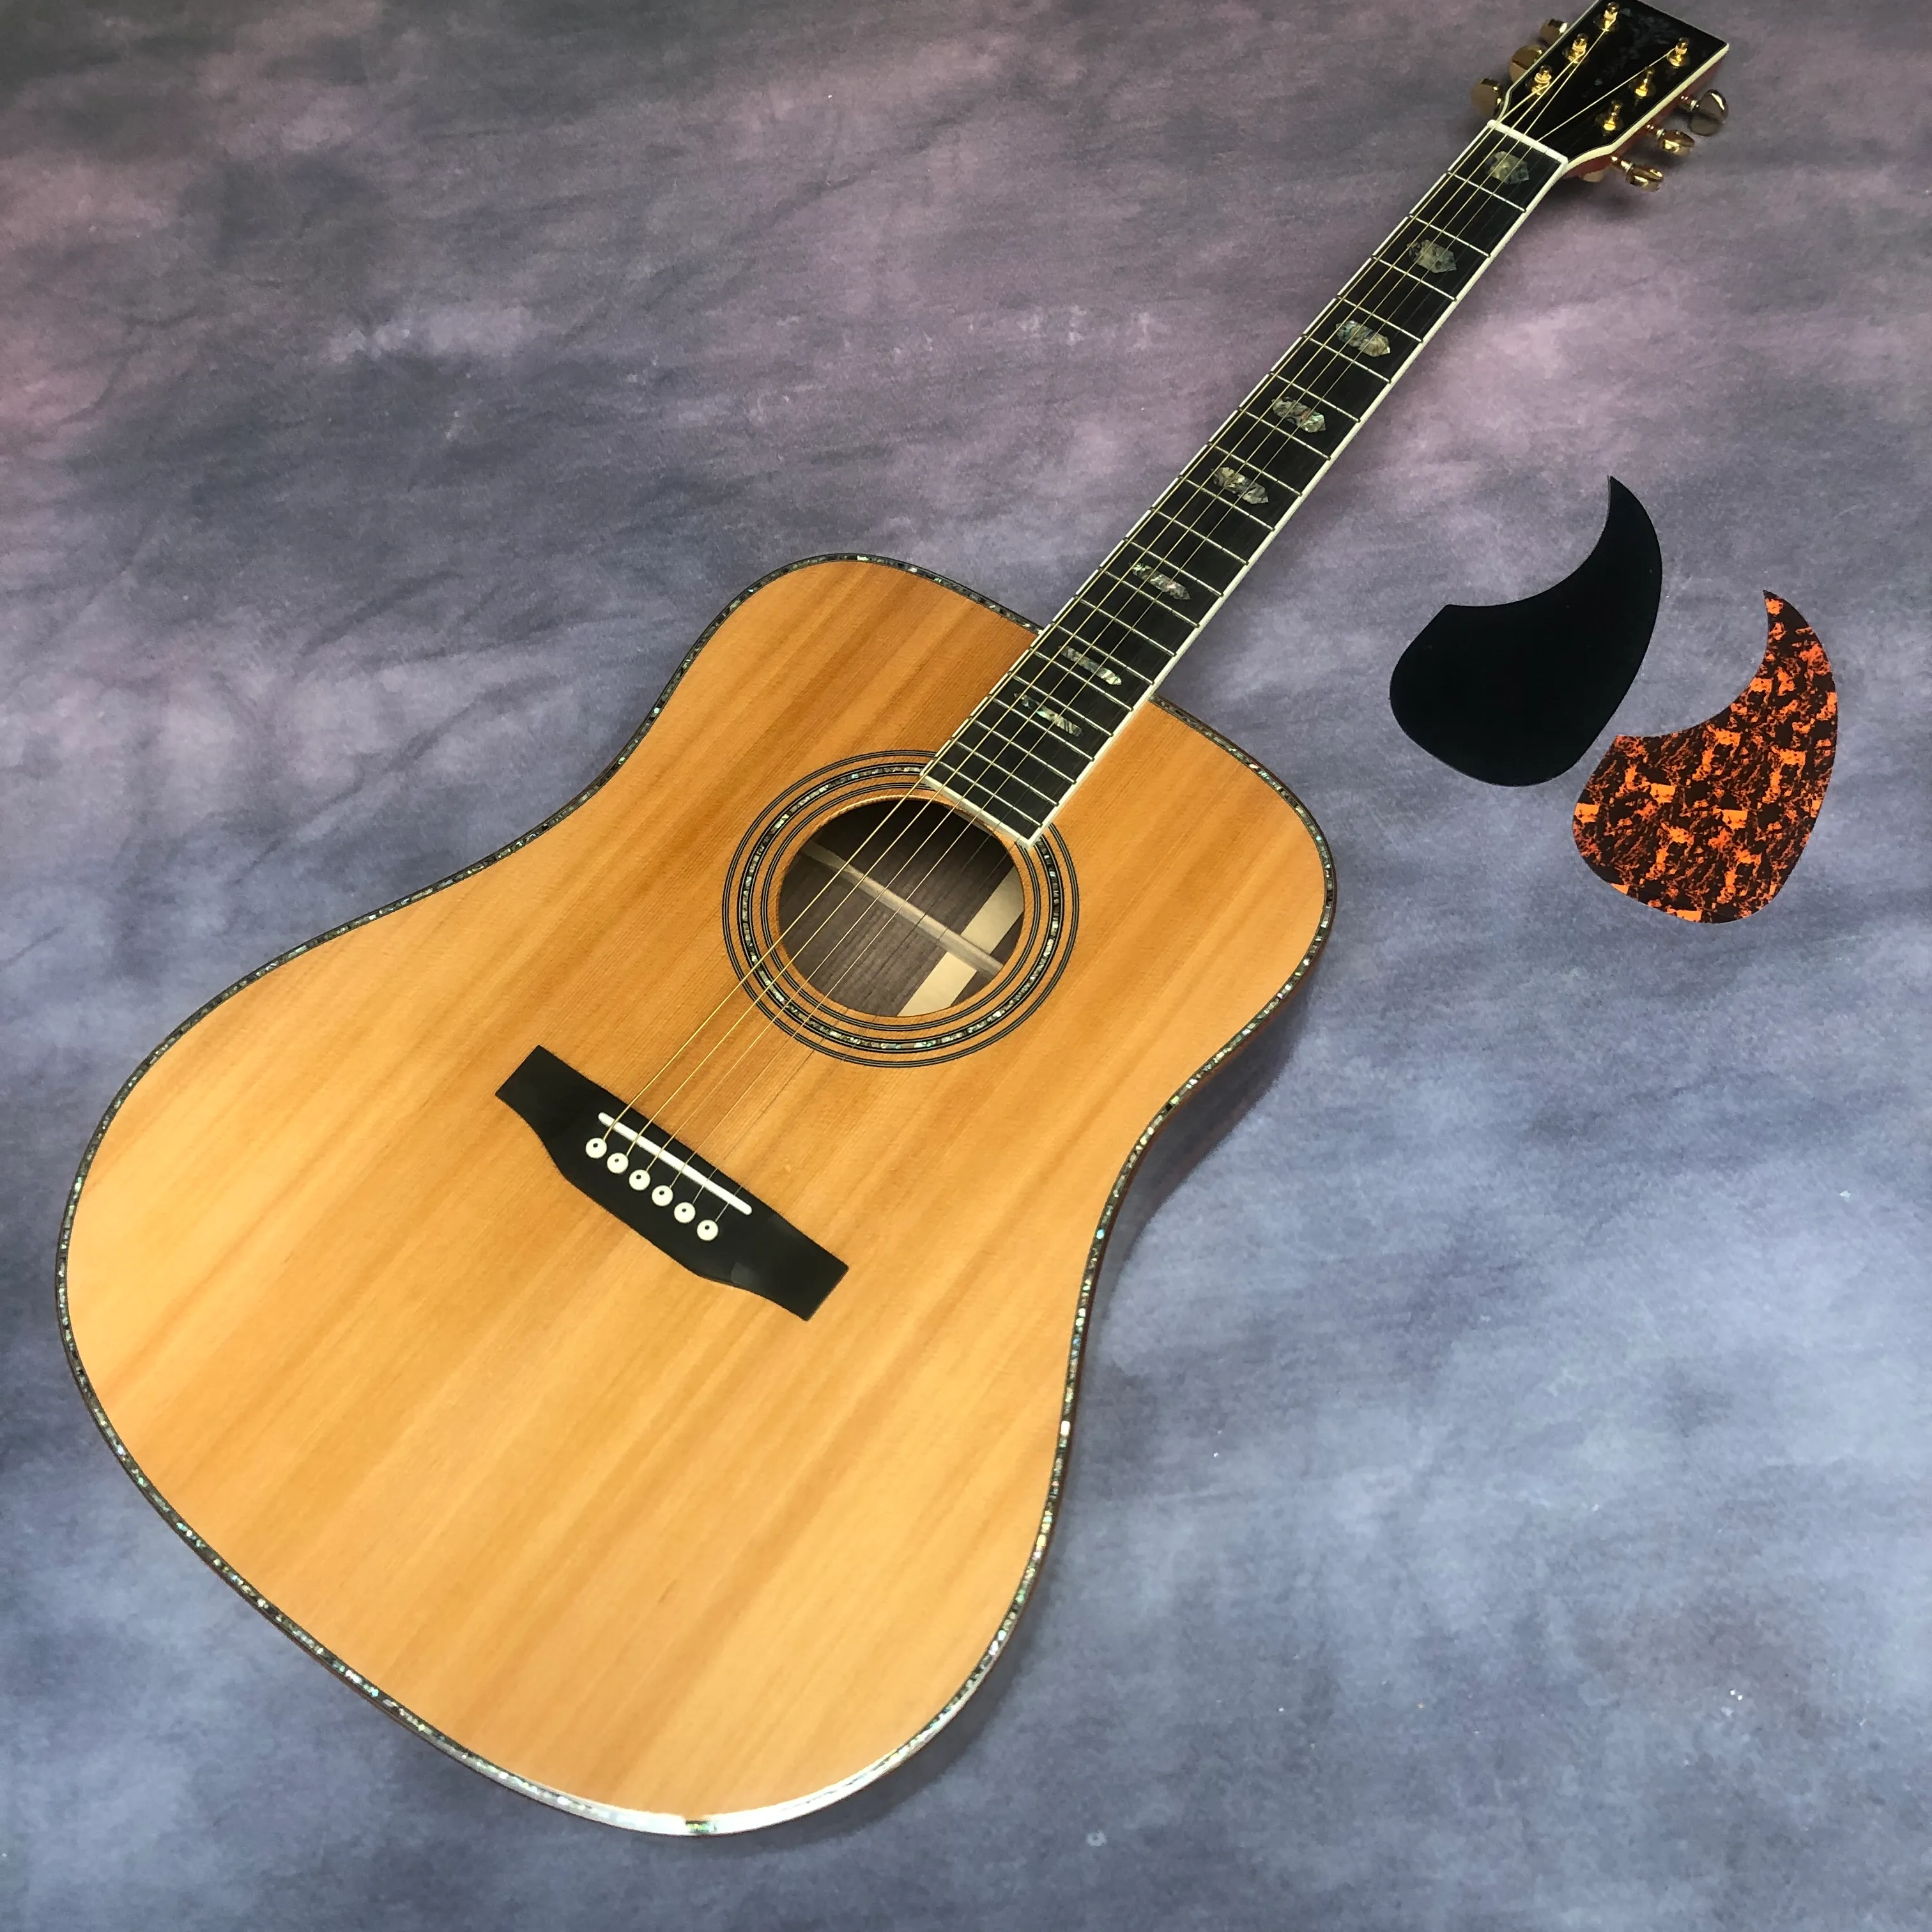 41 "D 배럴 단단한 나무 섹션 우즈 핑거 D45 시리즈 어쿠스틱 어쿠스틱 기타